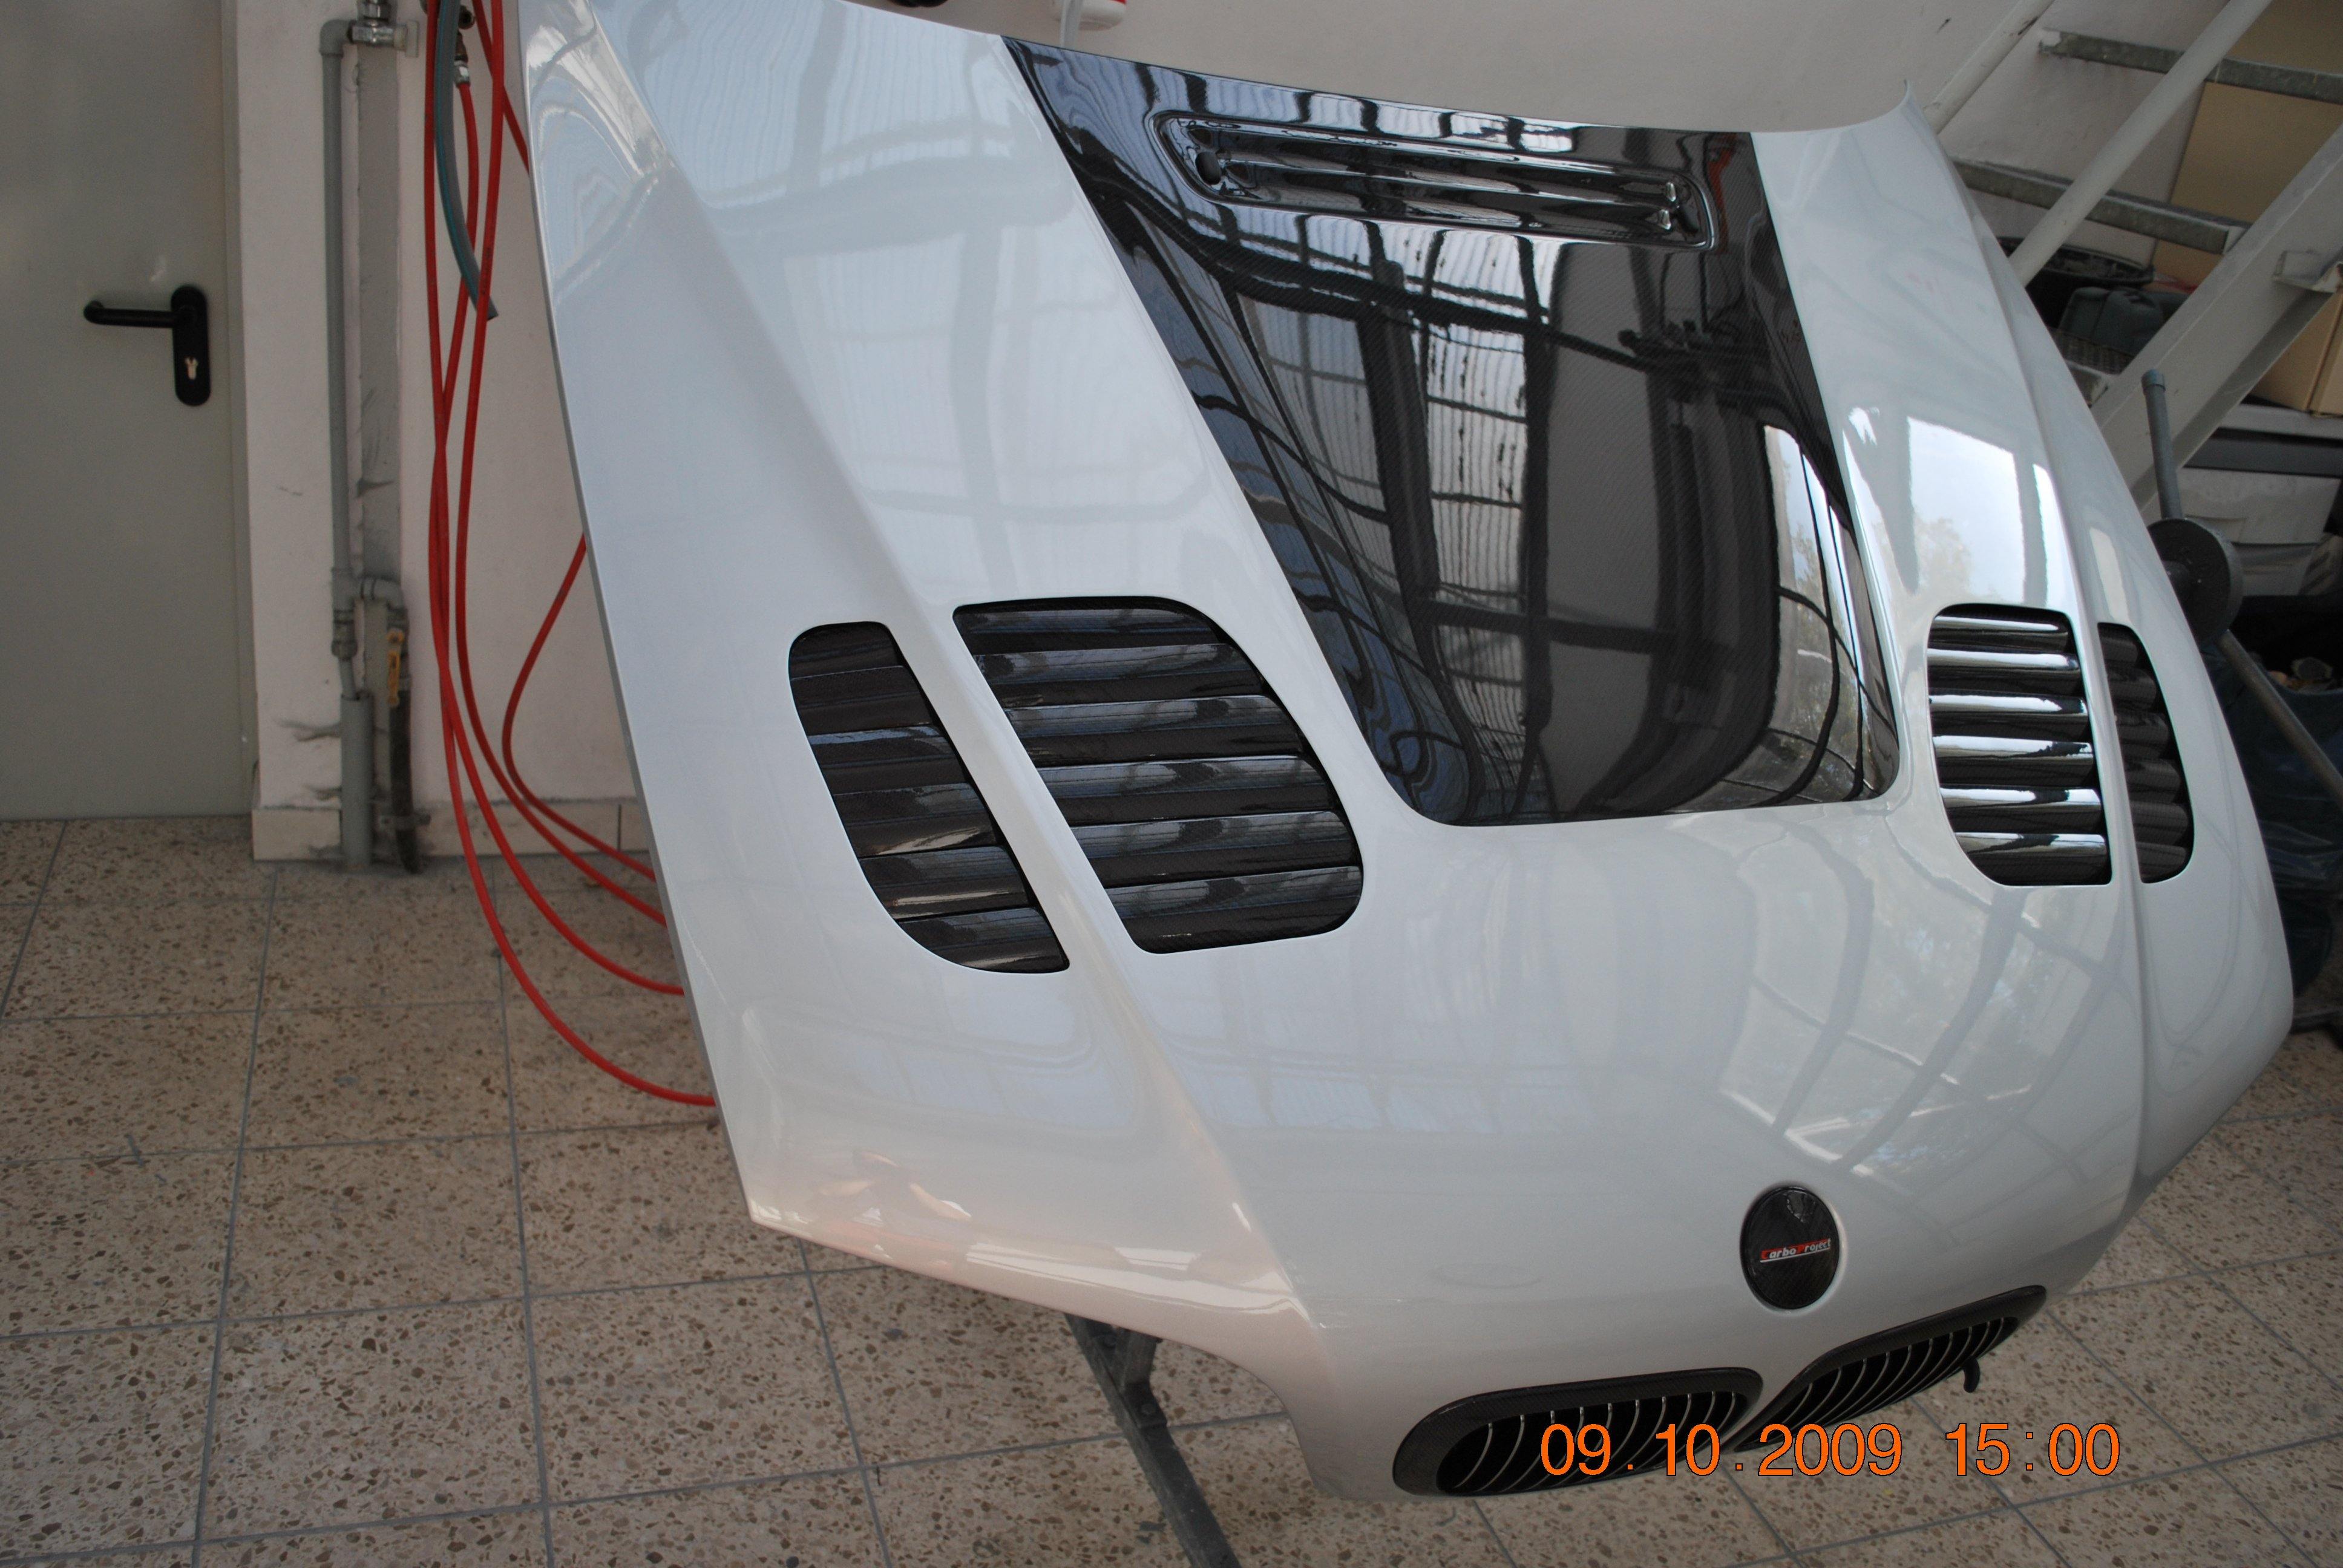 GTR Haube - E46 M3 - Carboproject